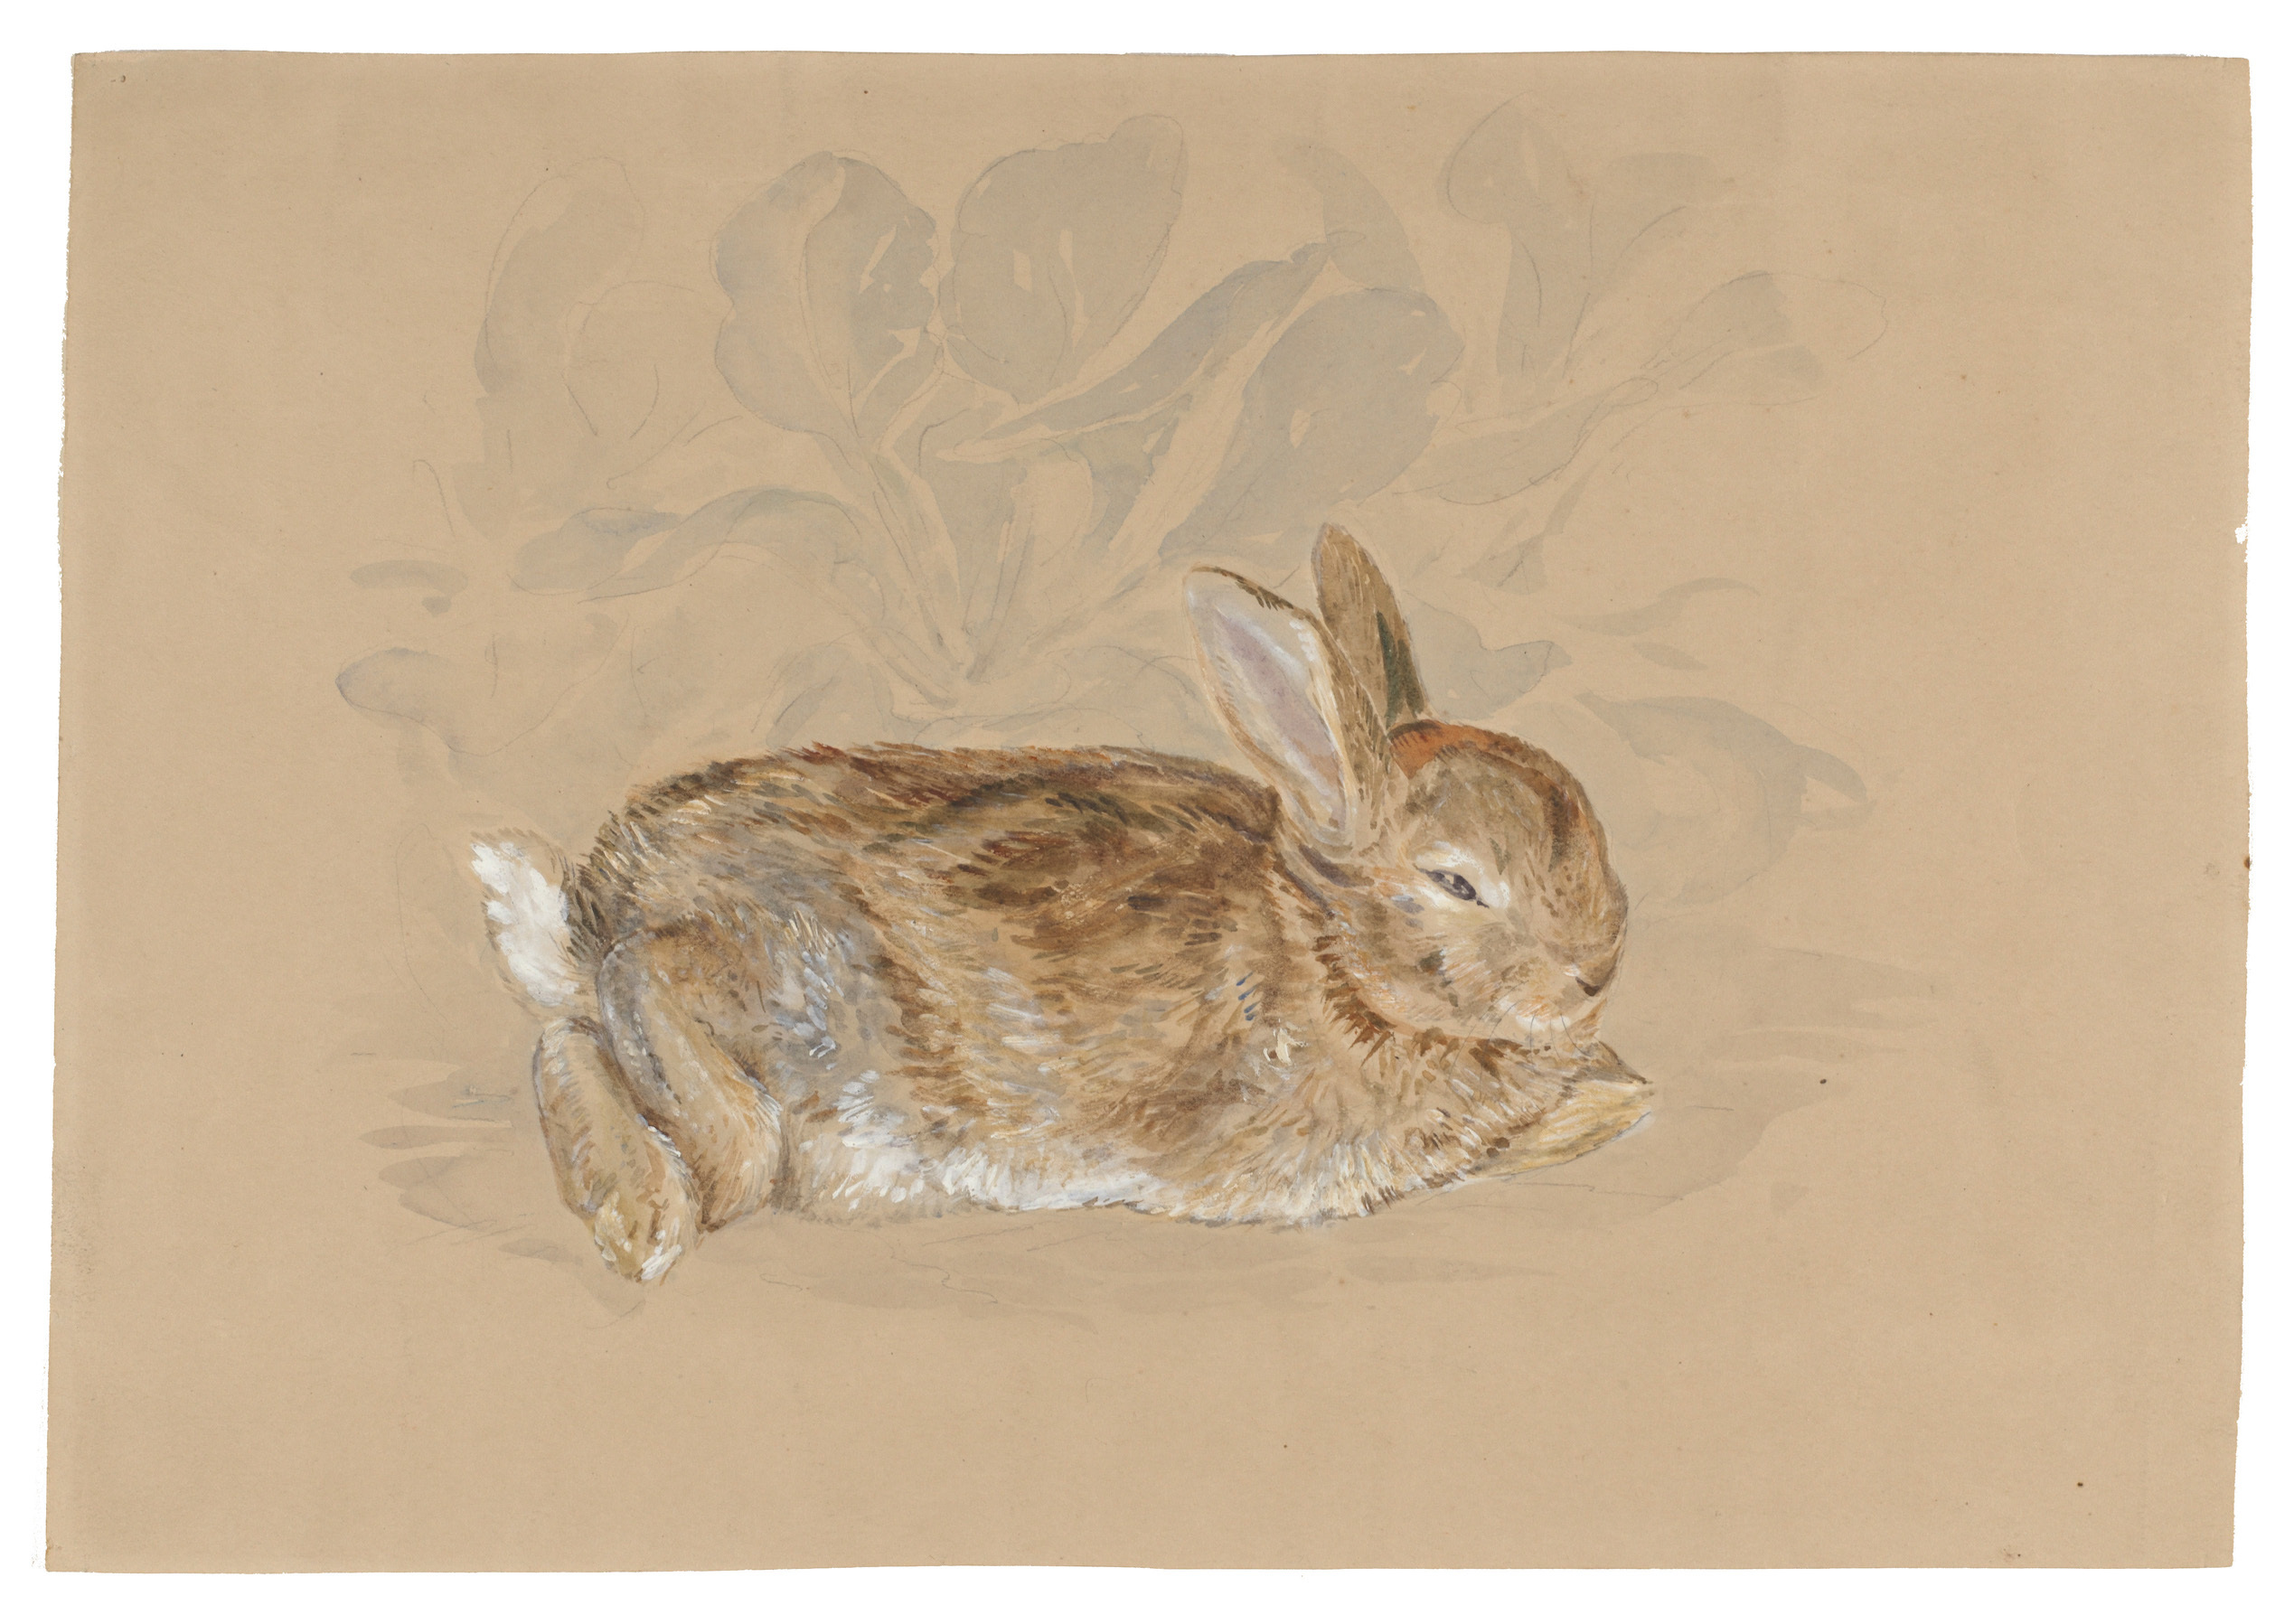 日本初公開となる 「庭の野ウサギ」 ビアトリクス・ポター 1892年 ヴィクトリア・アンド・アルバート博物館（リンダー・コレクションからの寄贈）